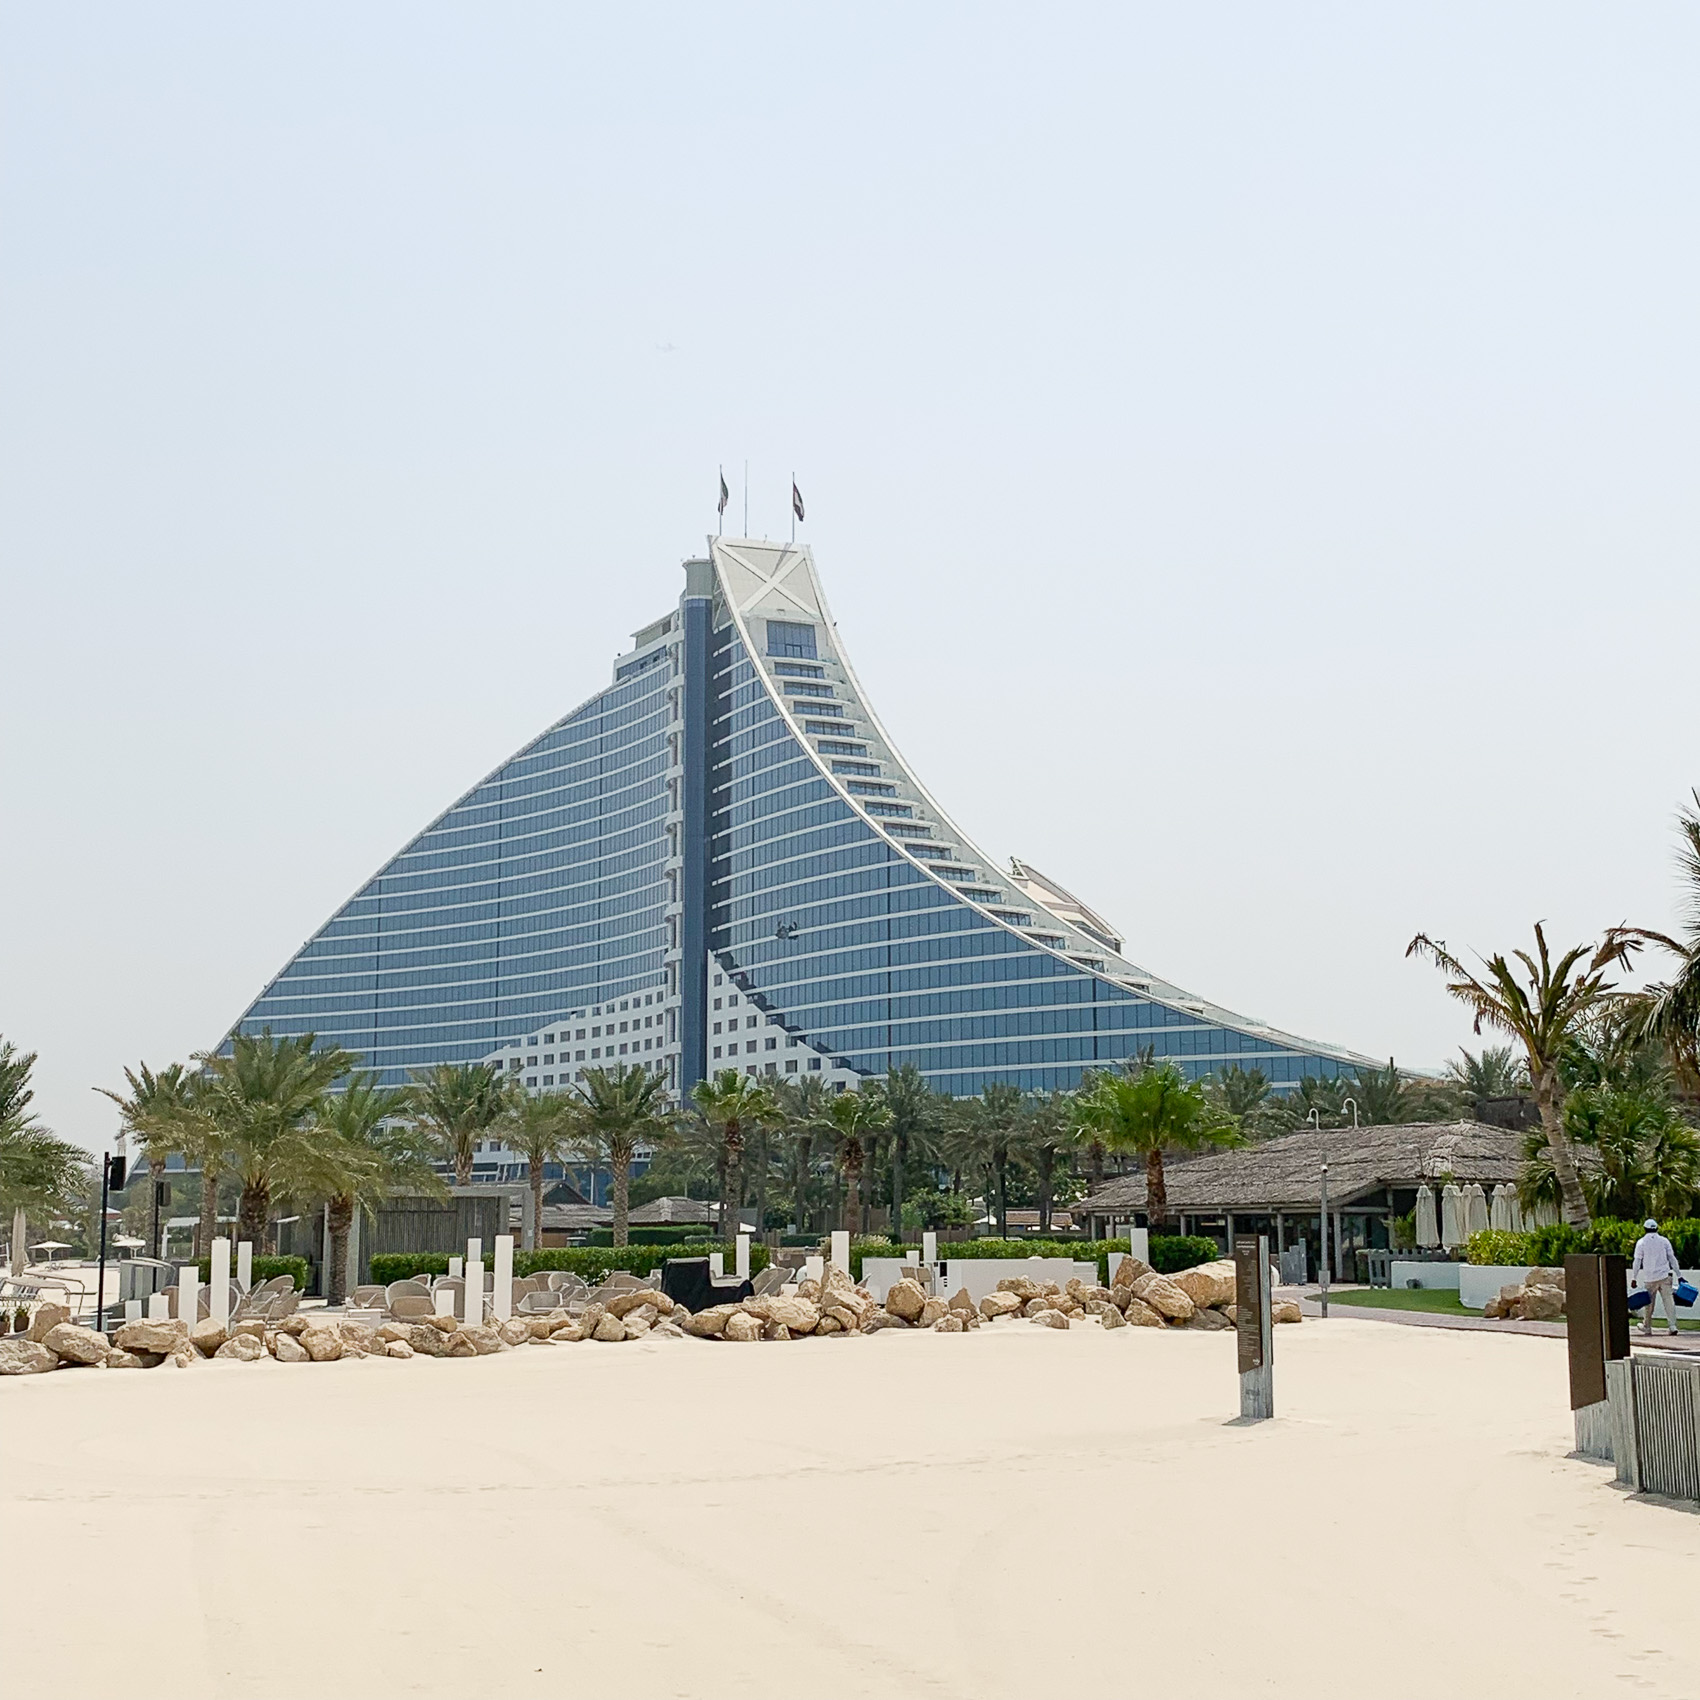 Jumeirah Beach Hotel Burj Al Arab